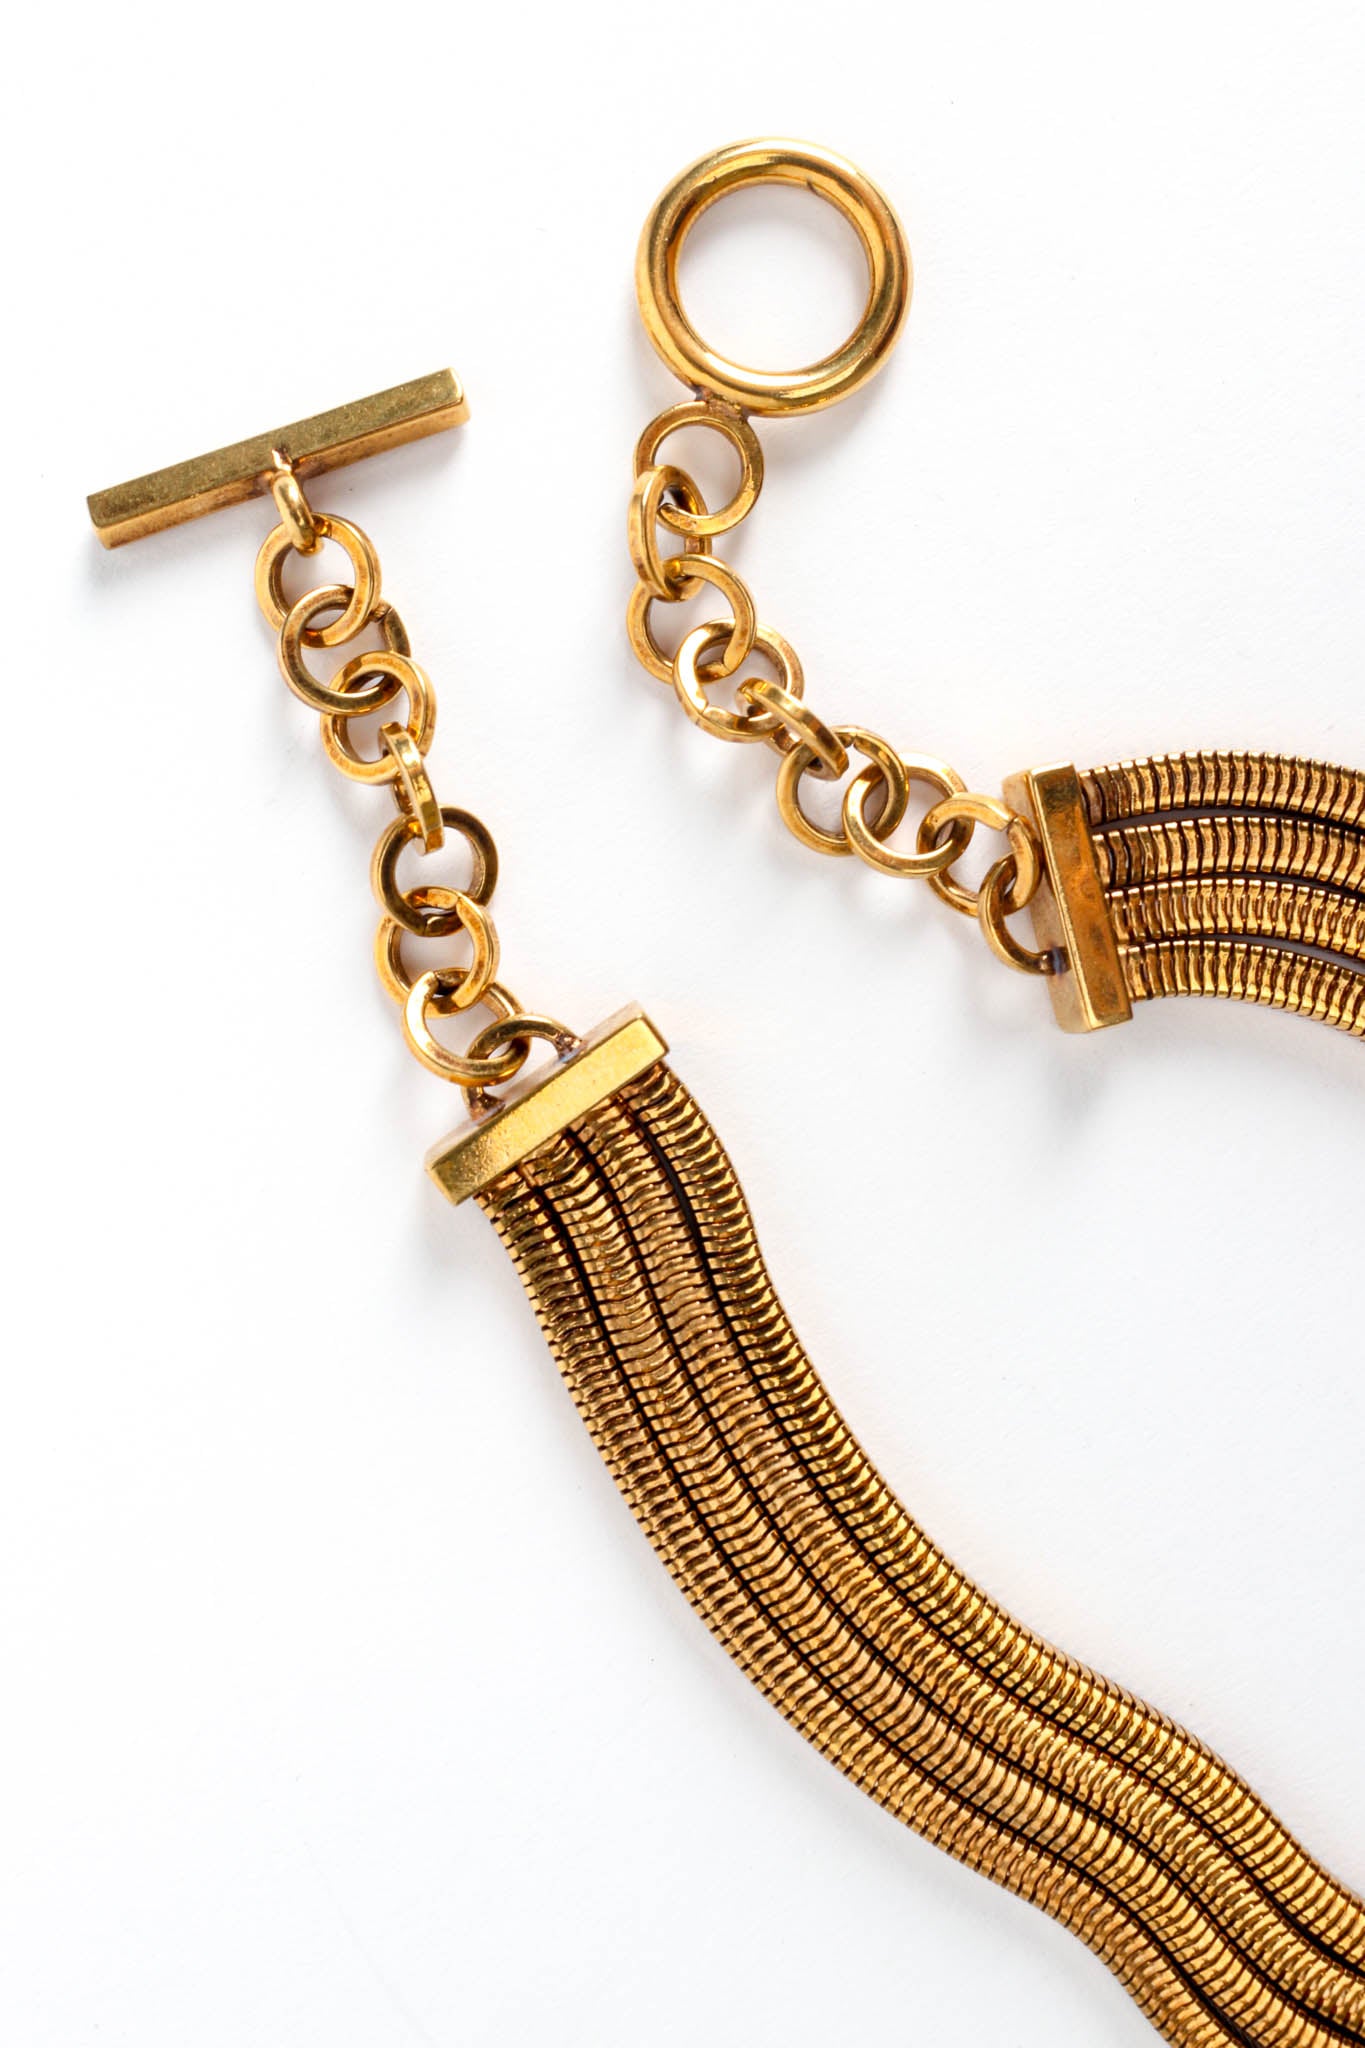 Vintage Dominique Aurientis Square Snake Chain Pendant Necklace Closeup Toggle at Recess LA